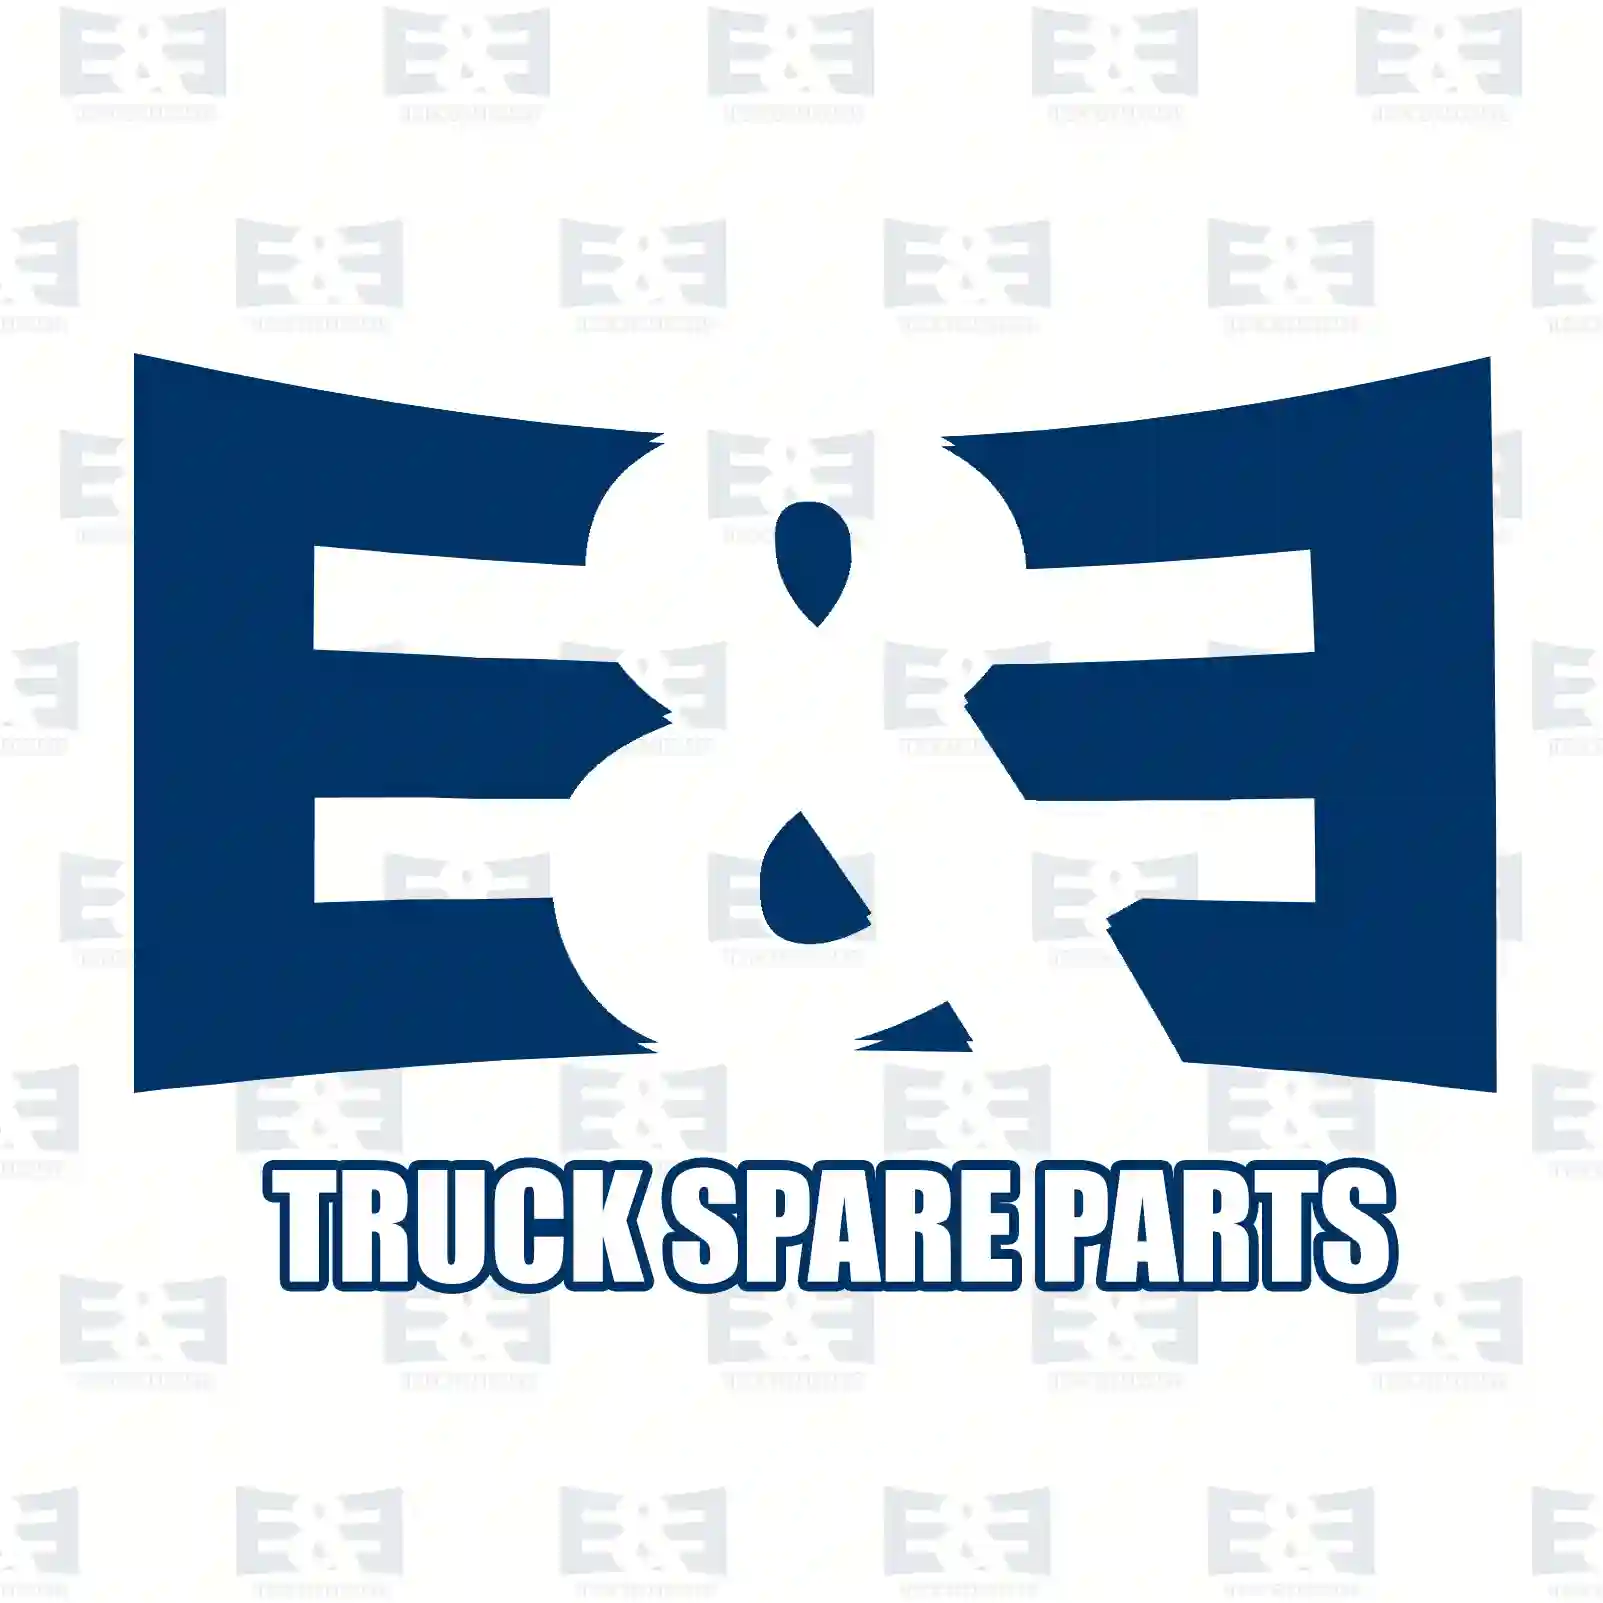 Propeller shaft, 2E2276744, 93813894, 99455121, 99455122 ||  2E2276744 E&E Truck Spare Parts | Truck Spare Parts, Auotomotive Spare Parts Propeller shaft, 2E2276744, 93813894, 99455121, 99455122 ||  2E2276744 E&E Truck Spare Parts | Truck Spare Parts, Auotomotive Spare Parts